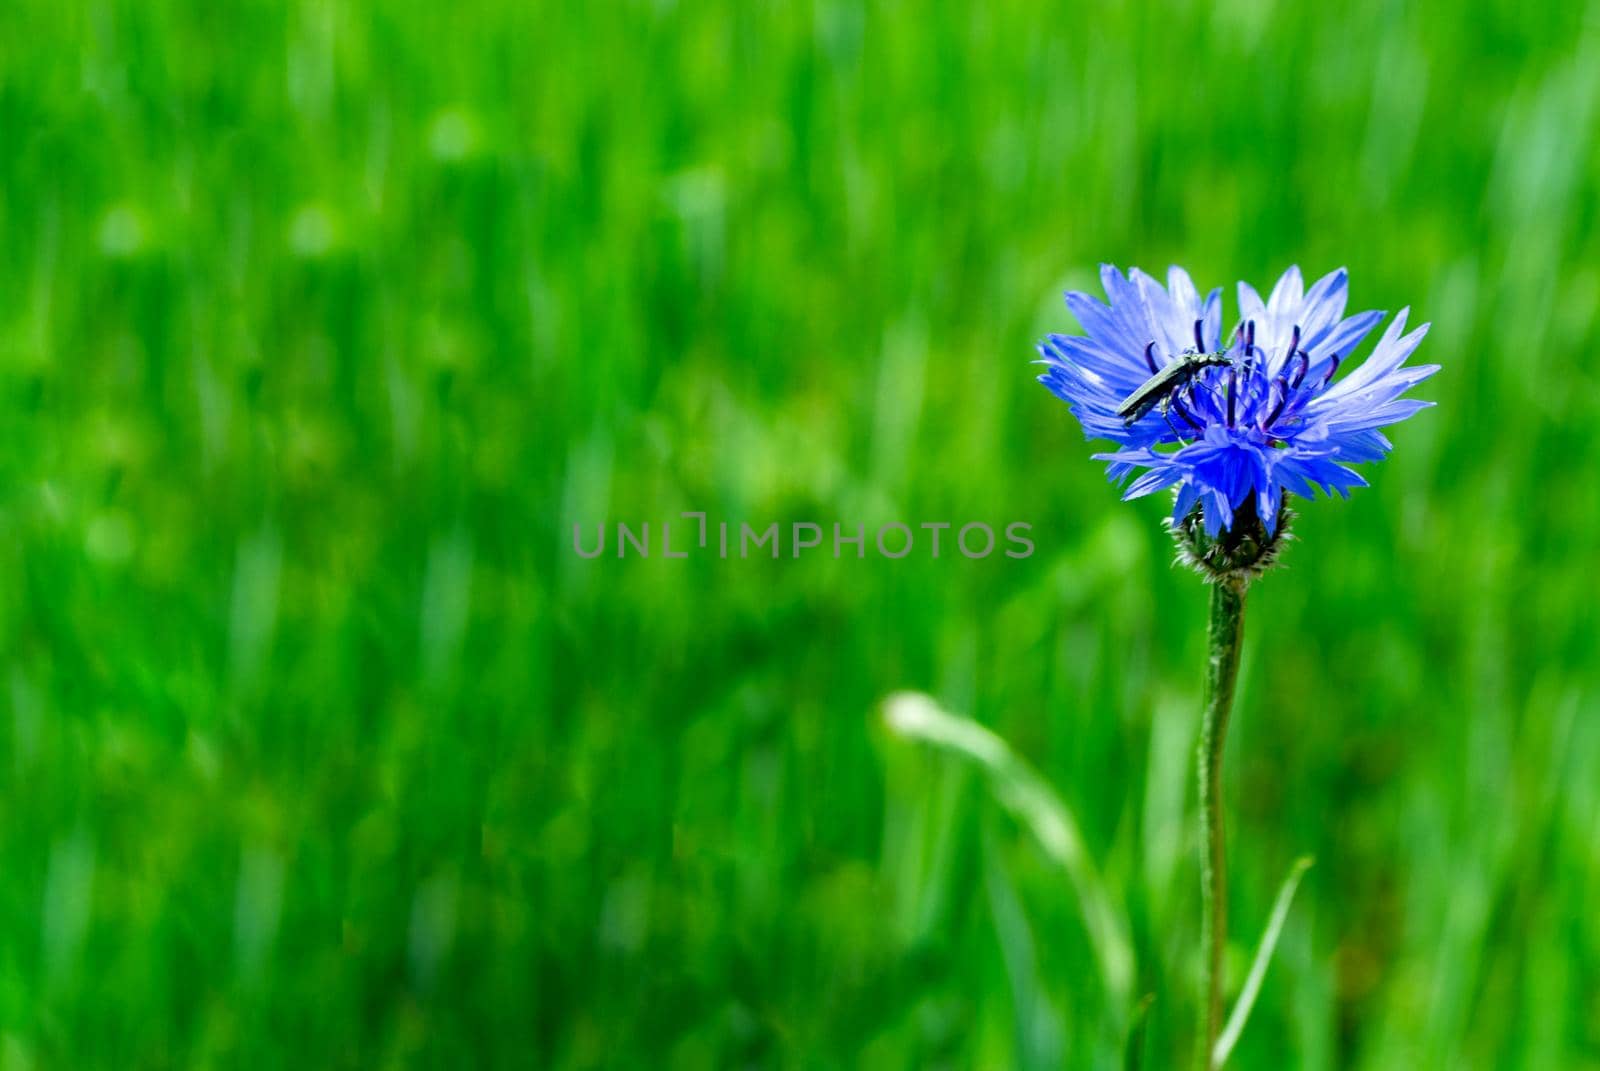 Blue cornflower in the field on a green background by milastokerpro